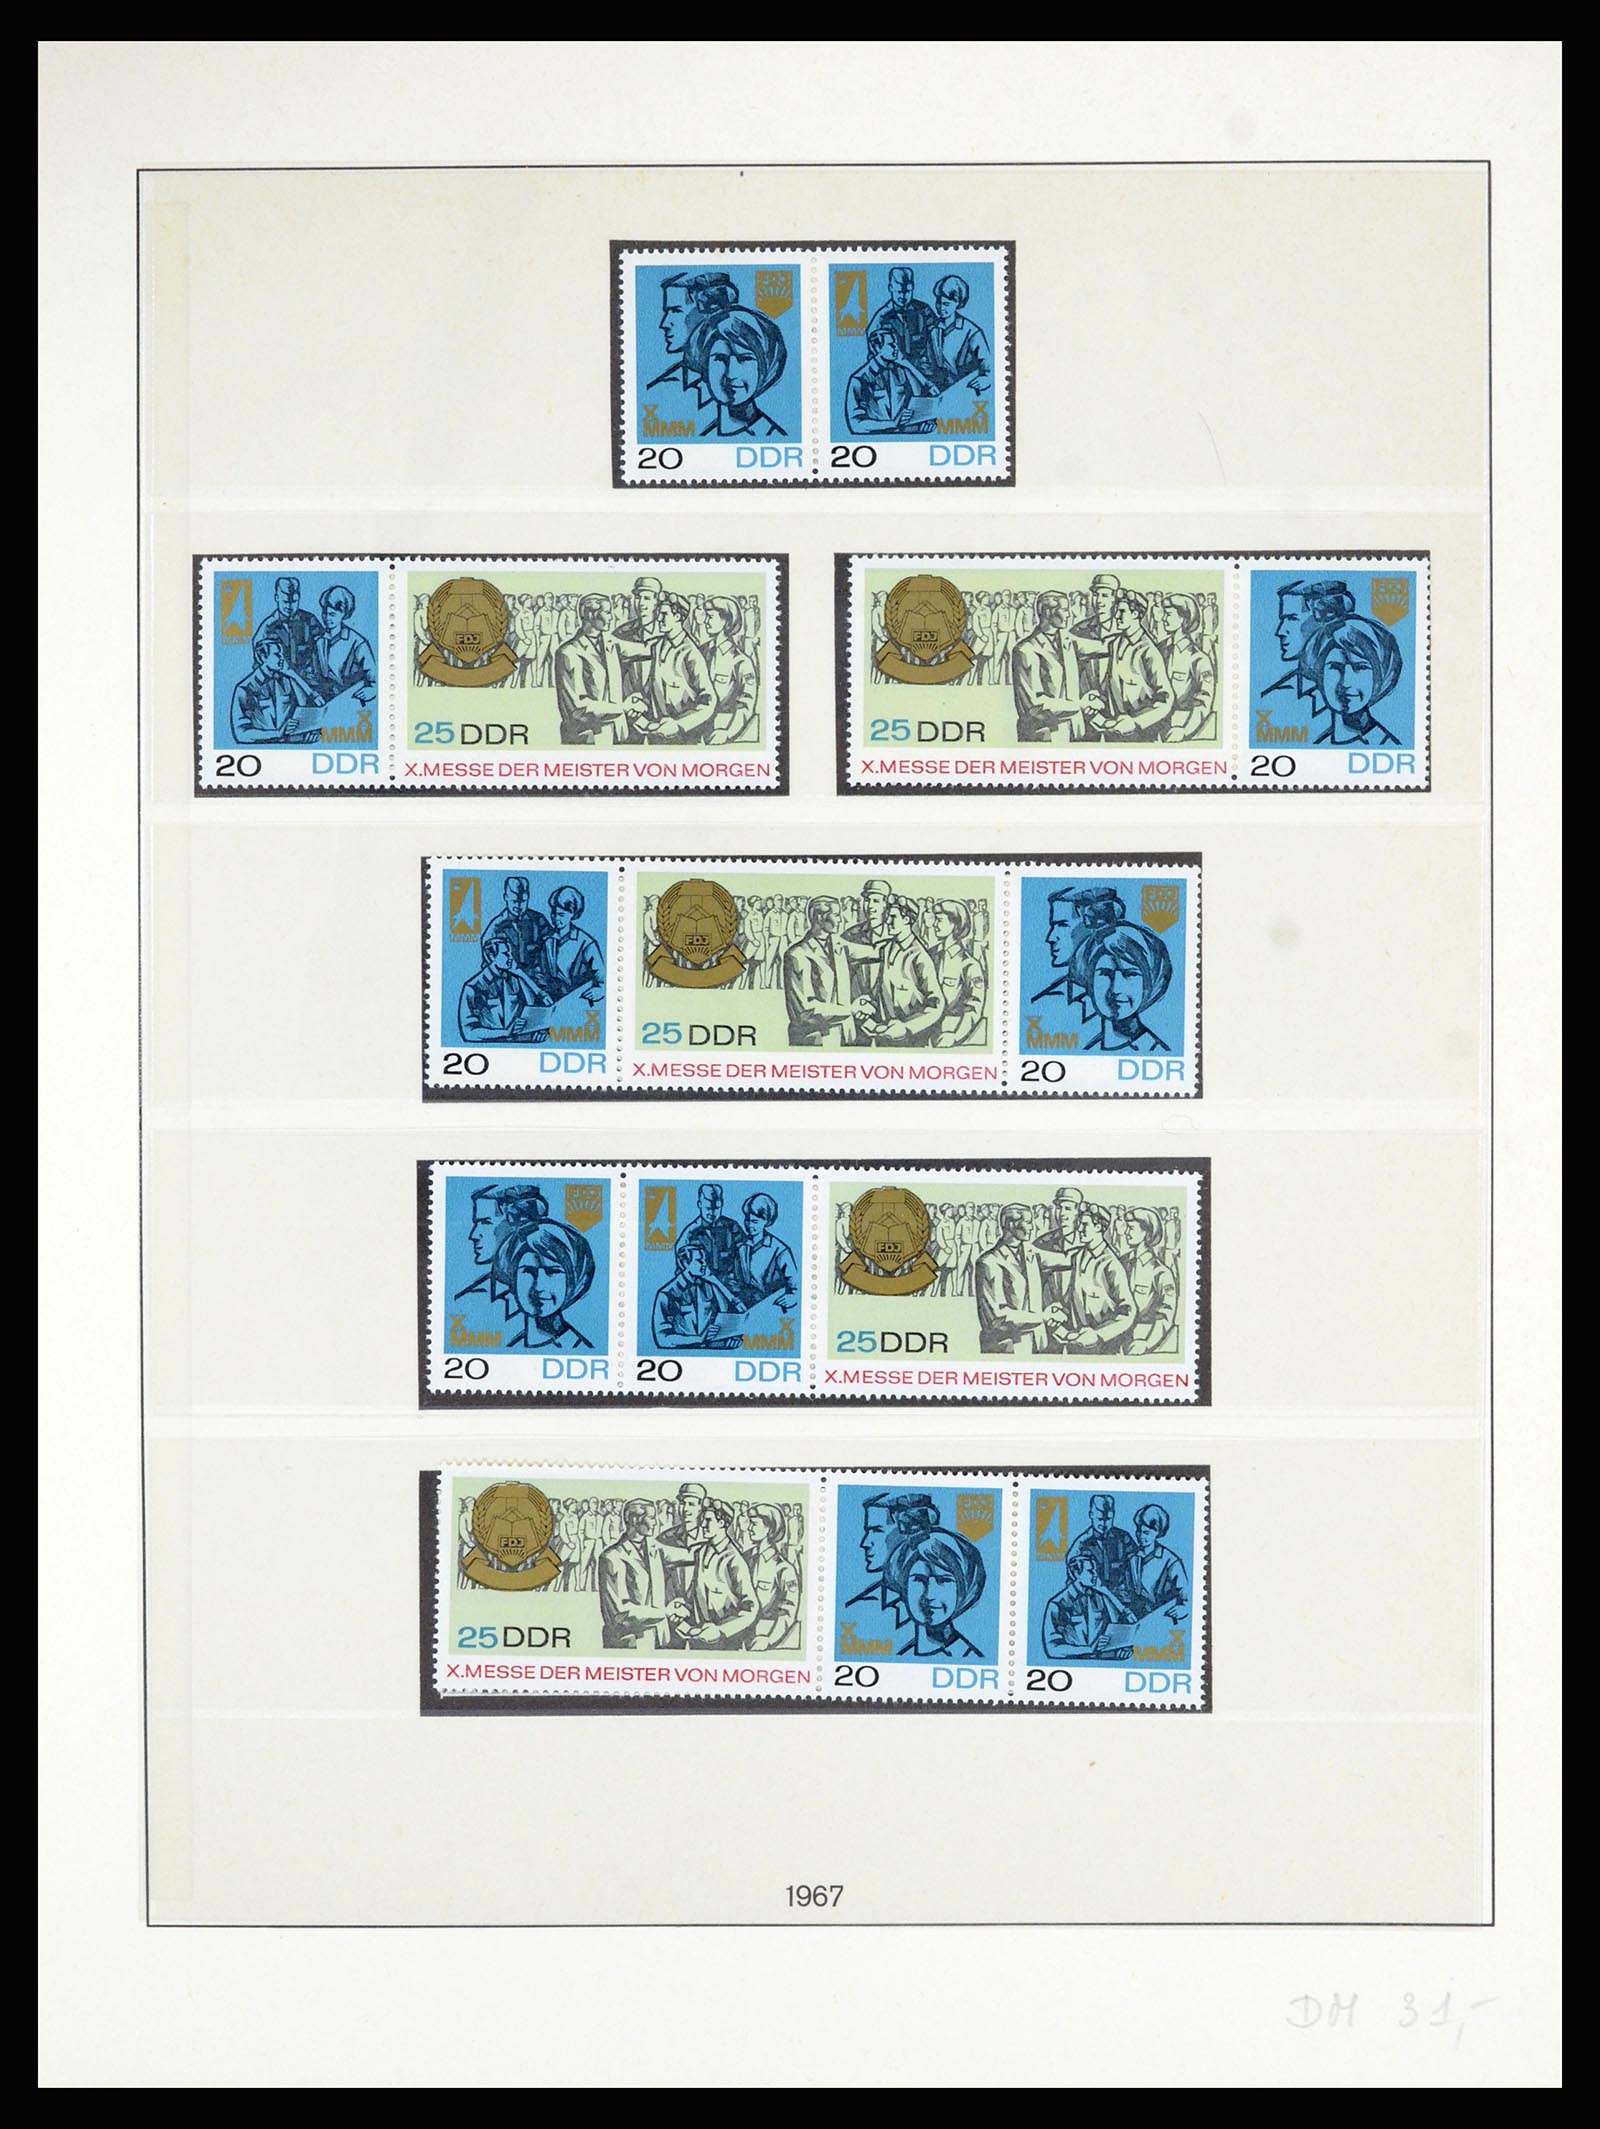 36879 038 - Postzegelverzameling 36879 DDR combinaties 1955-1981.